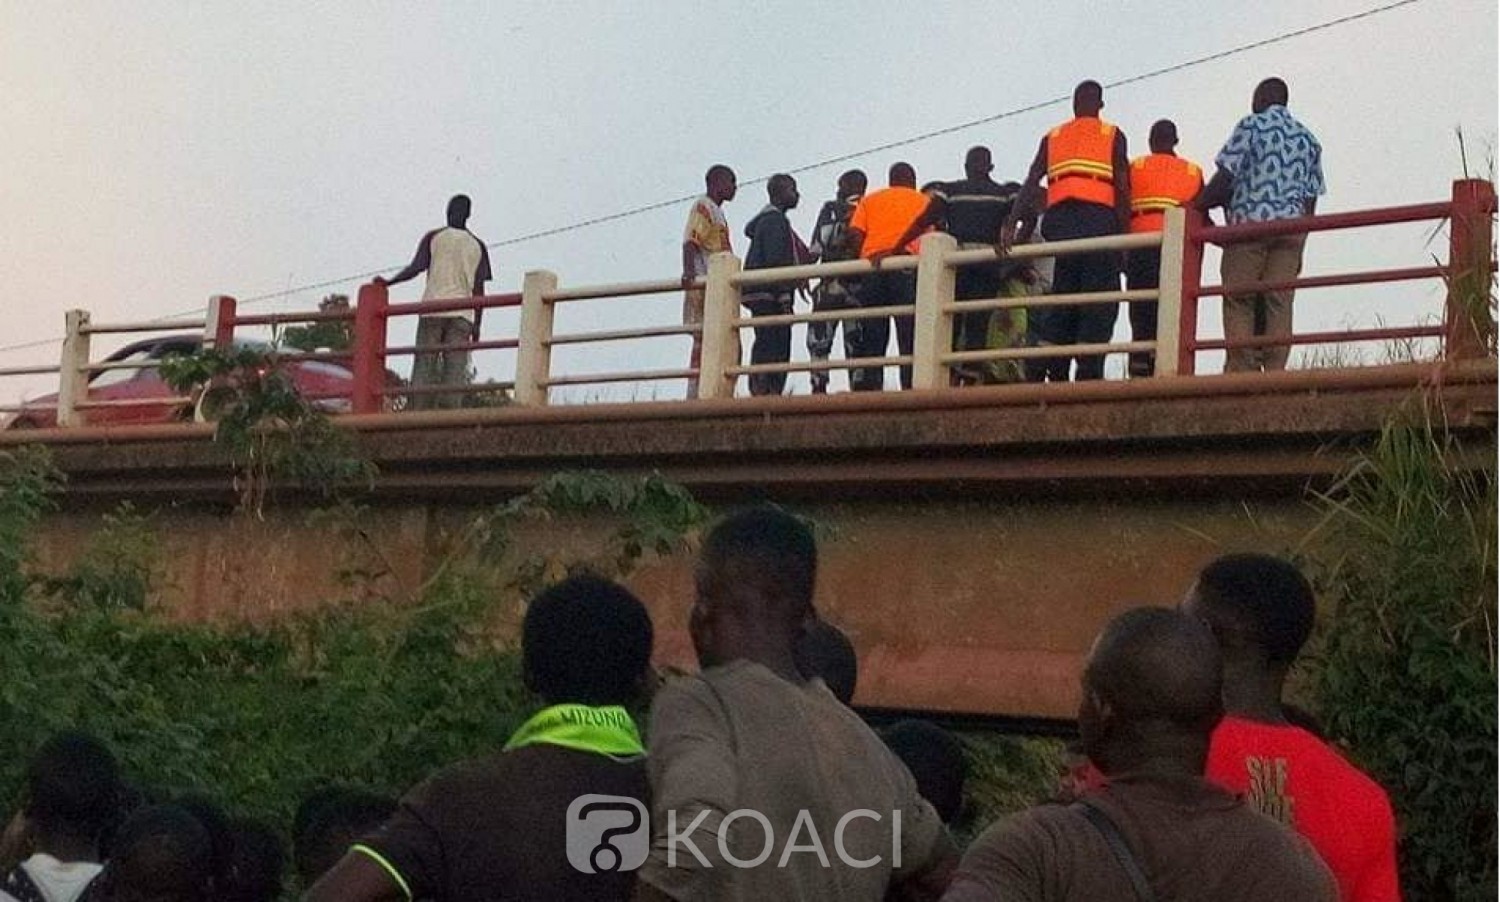 Côte d'Ivoire: Drame à Guiglo, un taxi tombe dans le fleuve N'Zo avec ses passagers après une collision avec un camion, au moins 1 mort